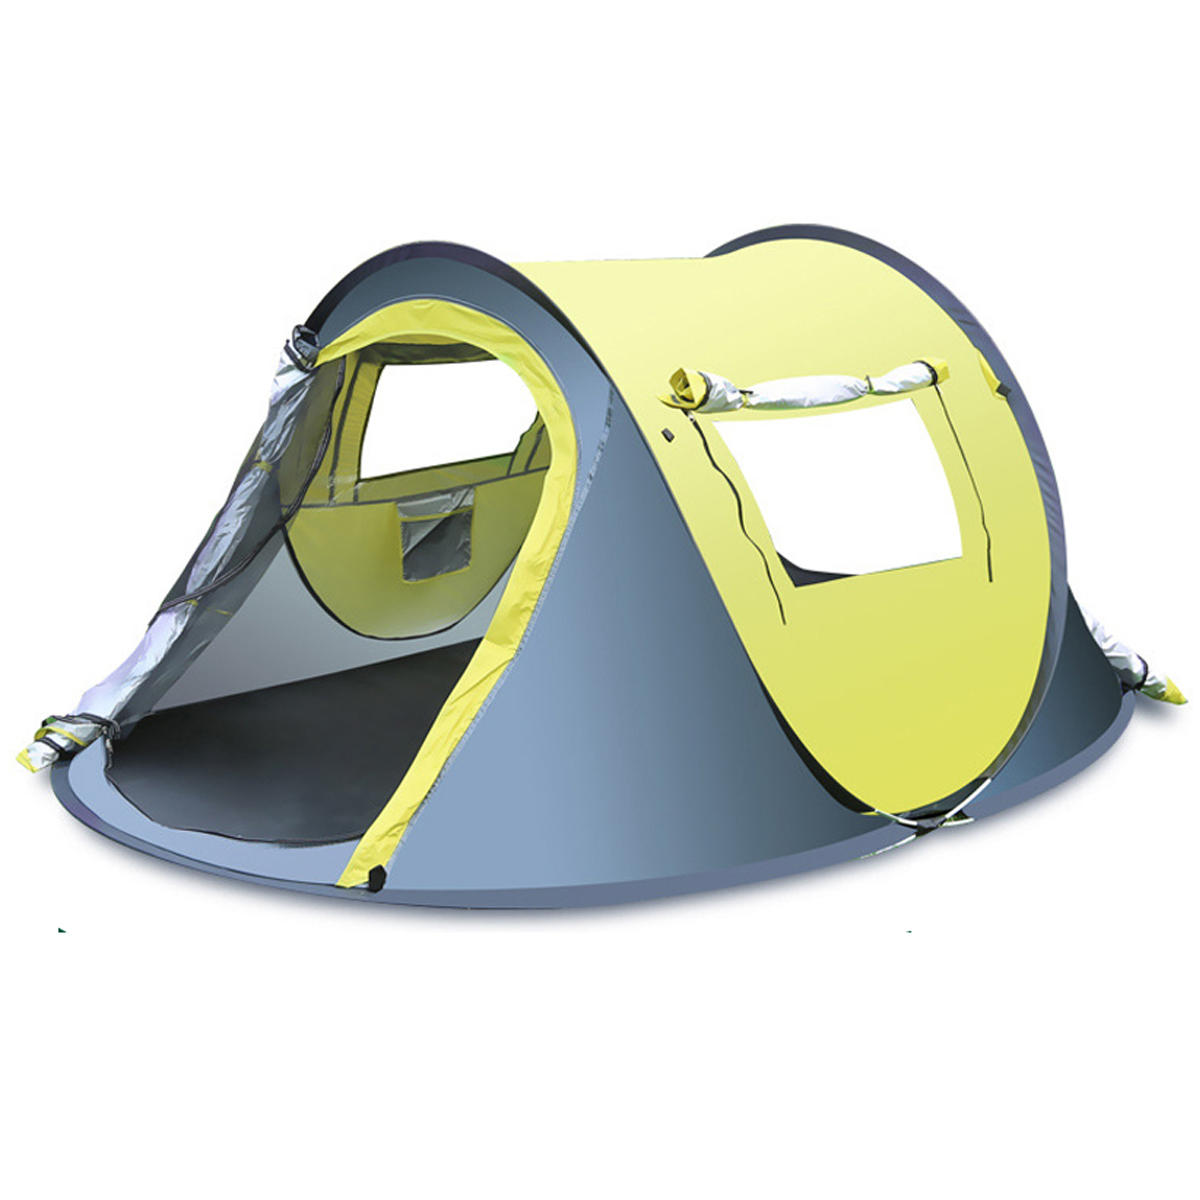 Tente extérieure rapide et automatique pour 3-4 personnes, imperméable et résistante à la pluie, avec auvent pour abriter du soleil, idéale pour le camping et la randonnée.